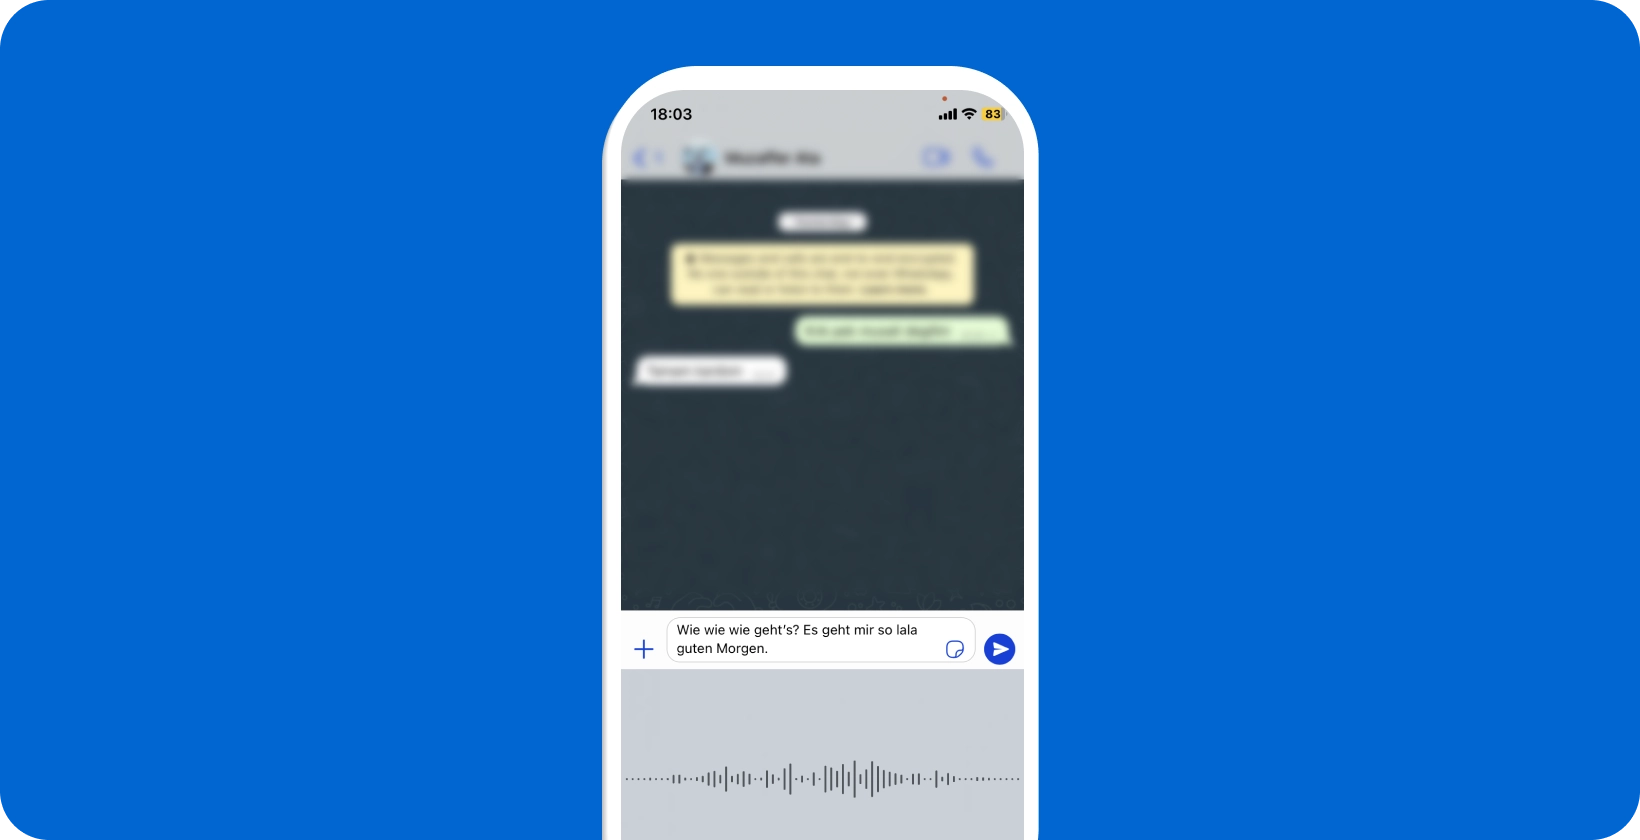 Pametni telefon, ki prikazuje WhatsApp glasovno narekovanje v teku in prikazuje pretvorbo govora v besedilo v realnem času.